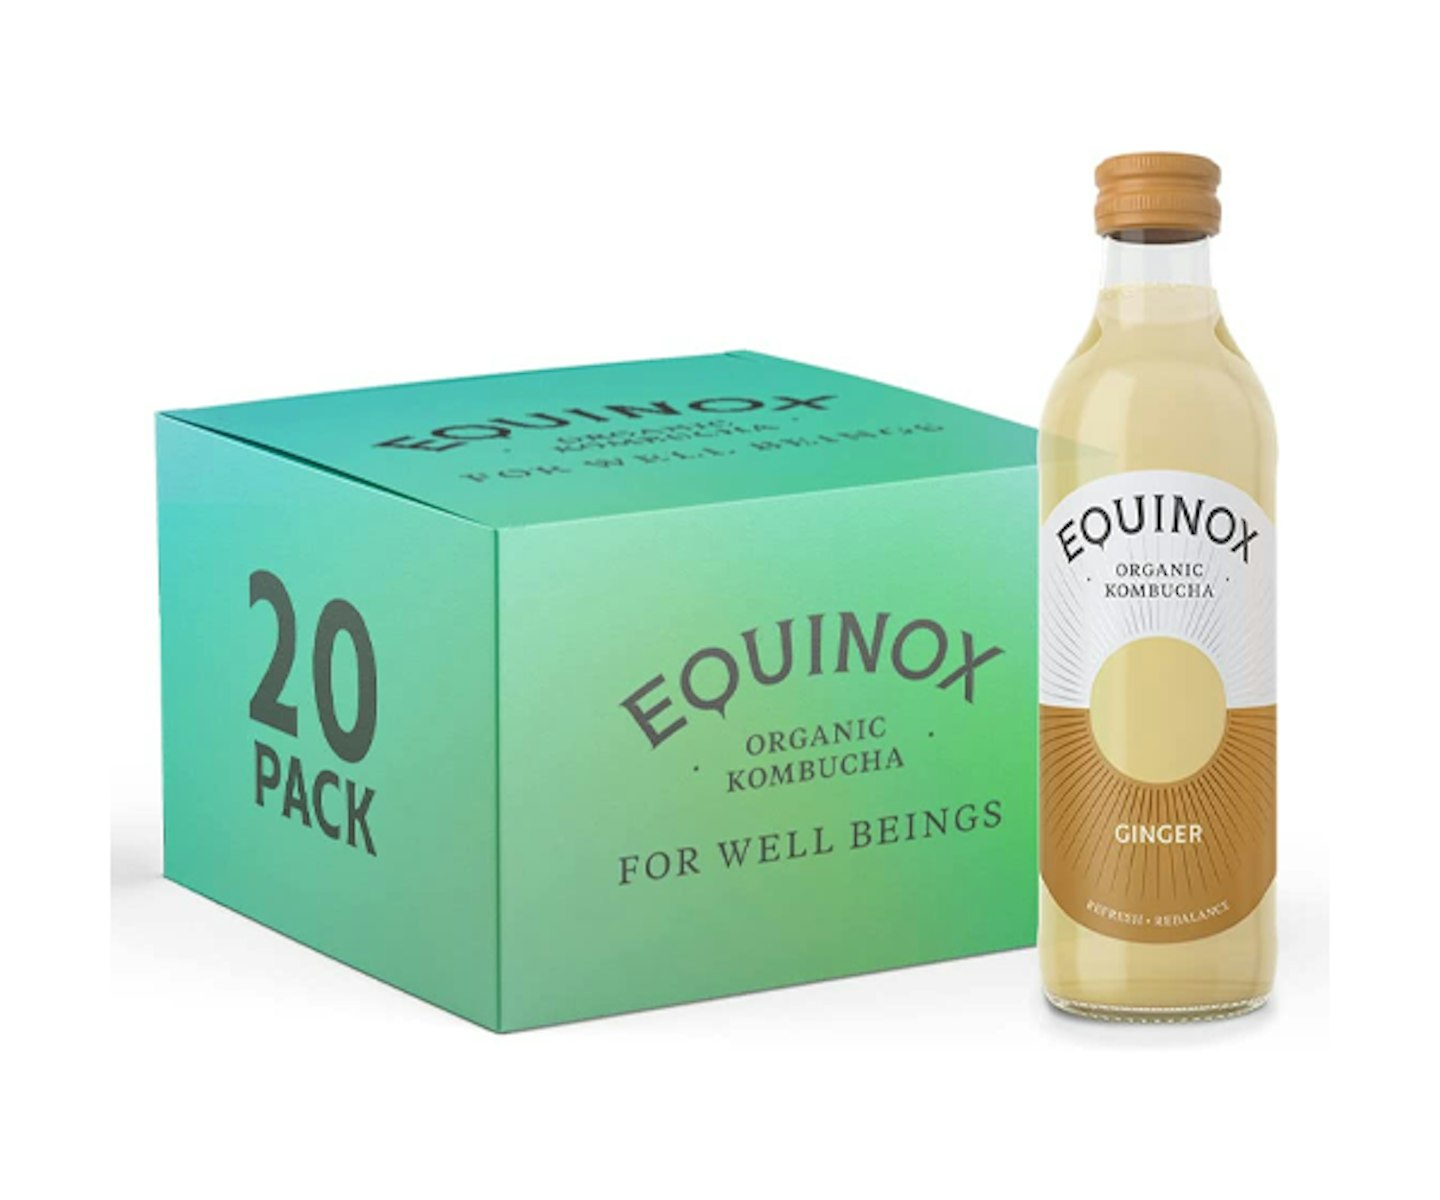 Equinox Kombucha Organic Ginger Fizzy Drink 275 ml (Pack of 20)